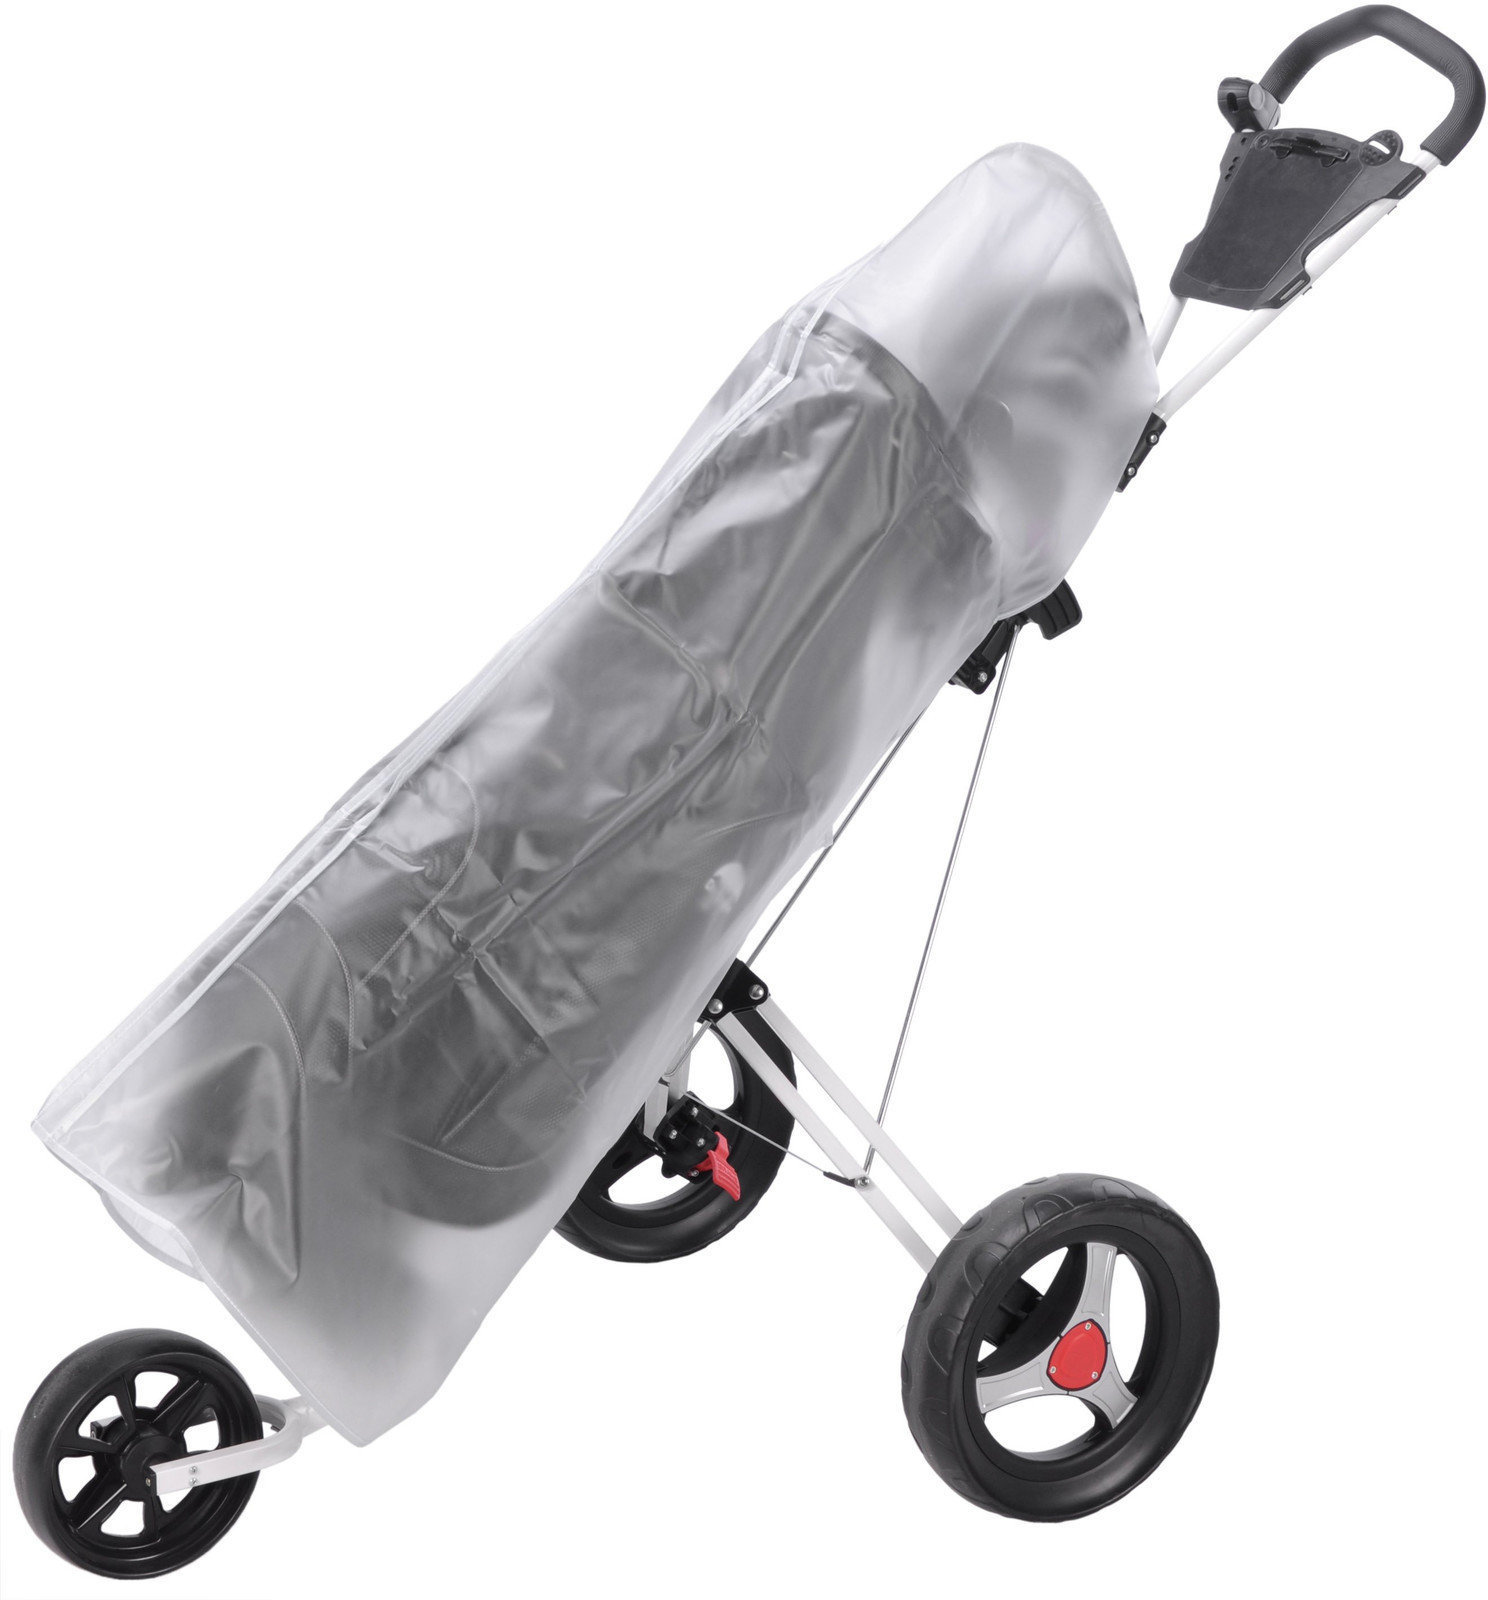 Regenschutz Legend Raincover Golfbag 8 - 10 Inch